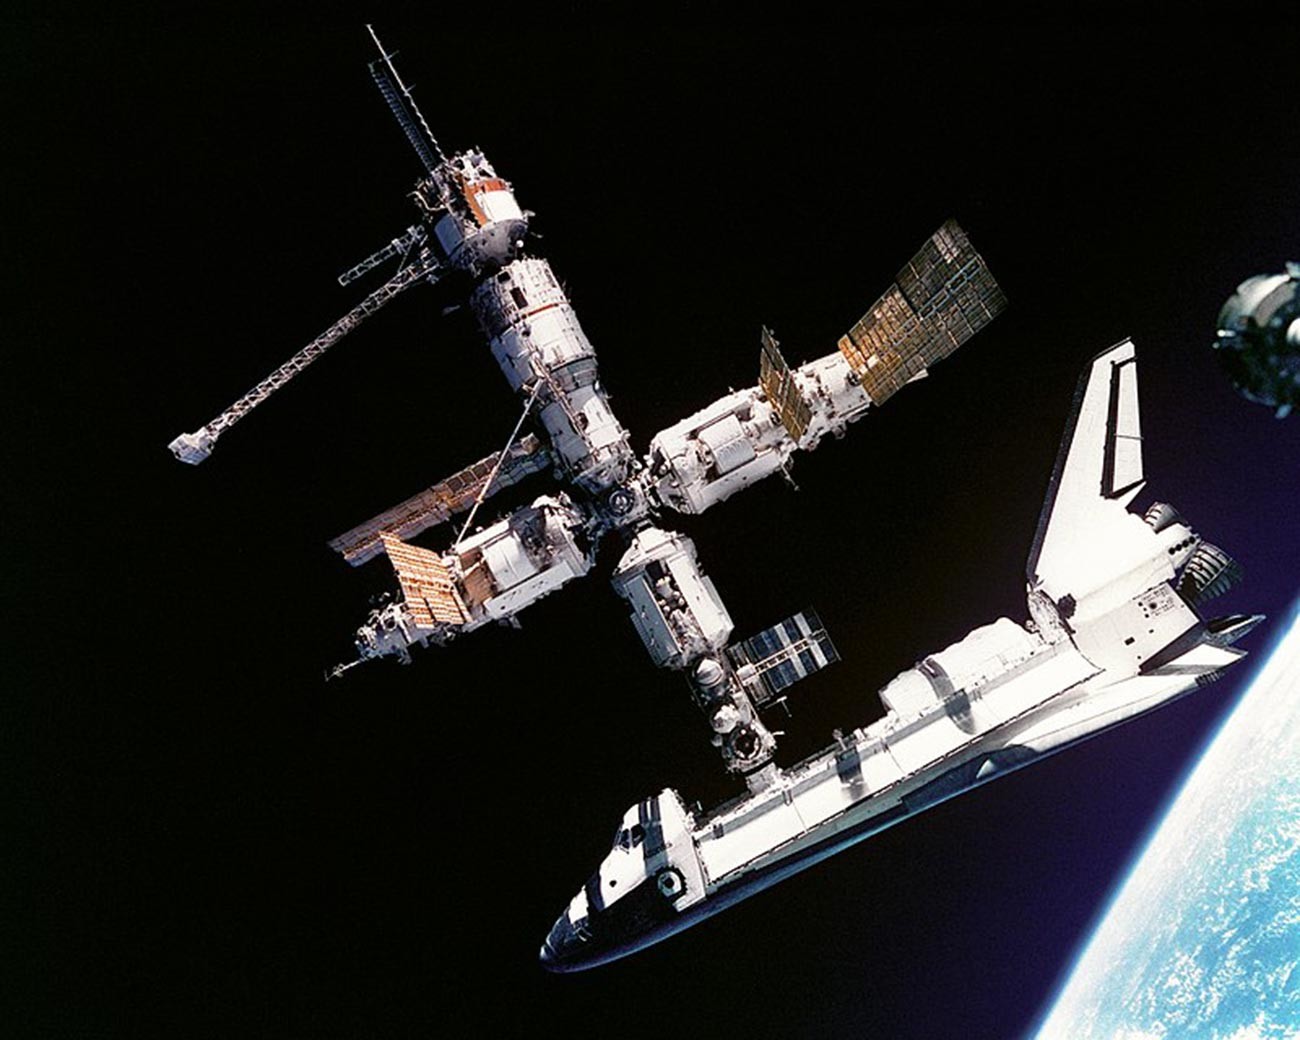 Questa vista dello Space Shuttle Atlantis ancora collegato alla stazione spaziale russa Mir è stata fotografata dall'equipaggio della Mir-19 il 4 luglio 1995